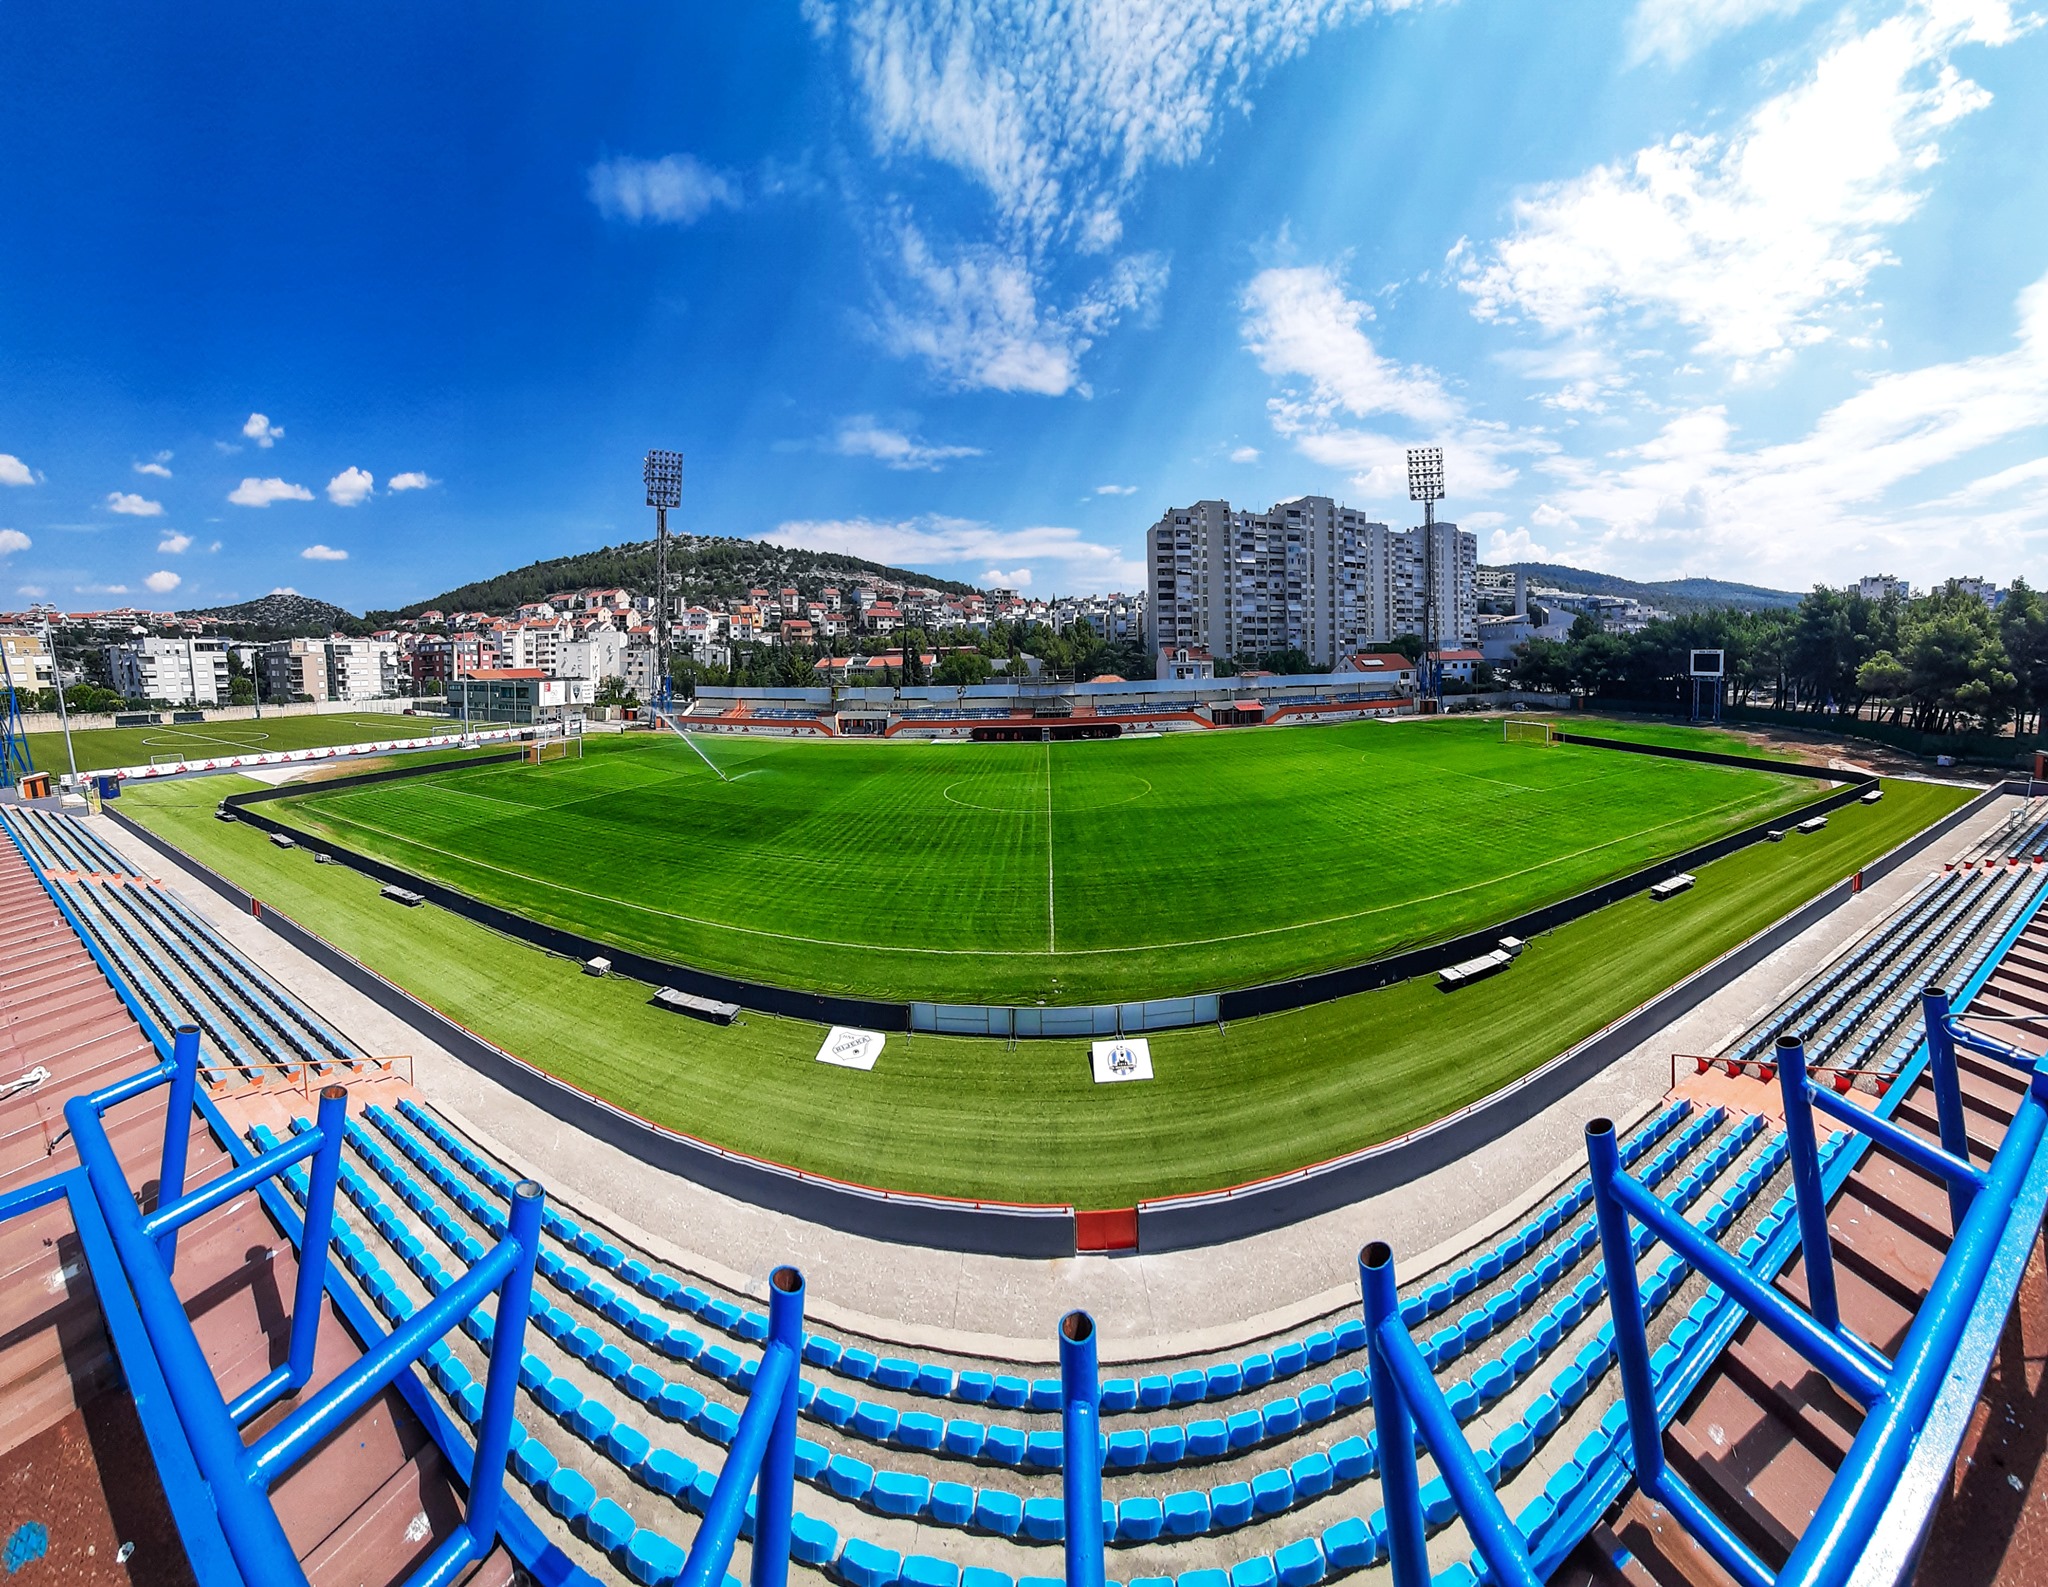 Prva Hrvatska Liga - Početne postave za susret HNK Hajduk Split - HNK Gorica  (17:05)